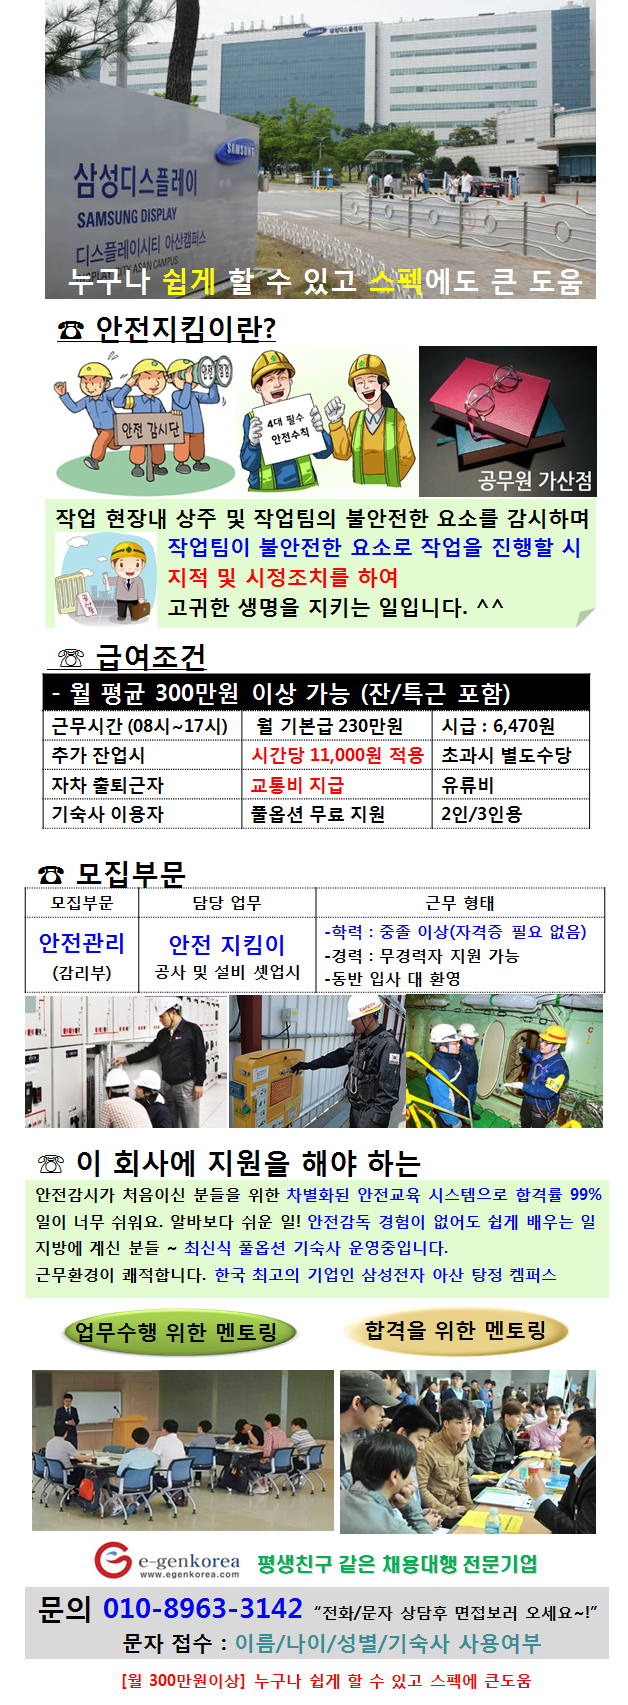 천안/아산 삼성 사업장 안전관리 요원 정규직 채용